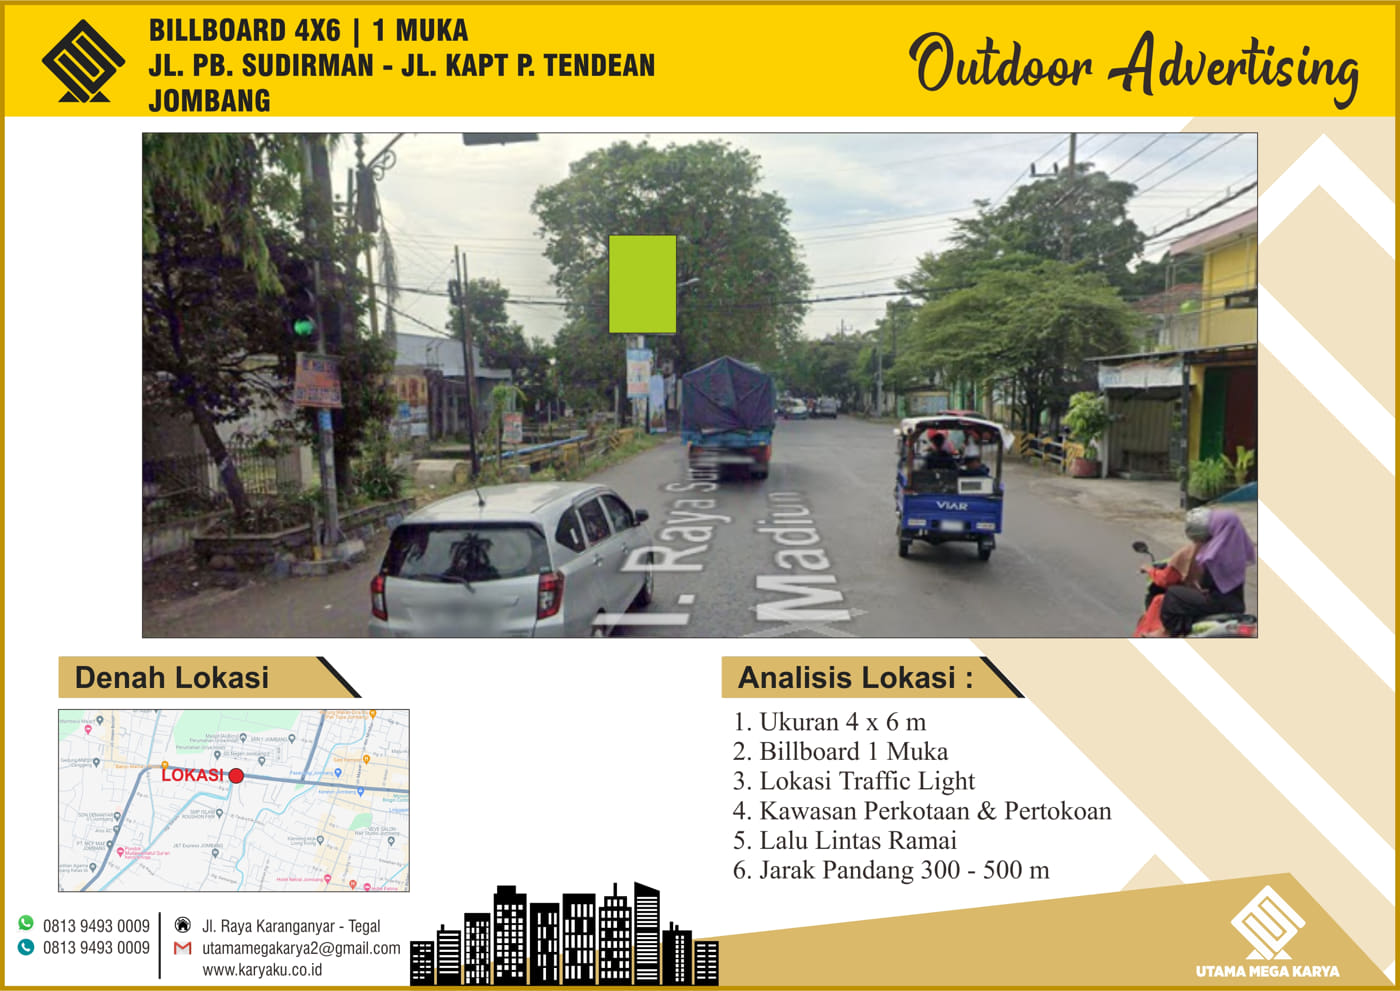 Sewa Titik Billboard di Jombang, Jl. PB. Sudirman - Jl. Kapt. P. Tendean Jombang